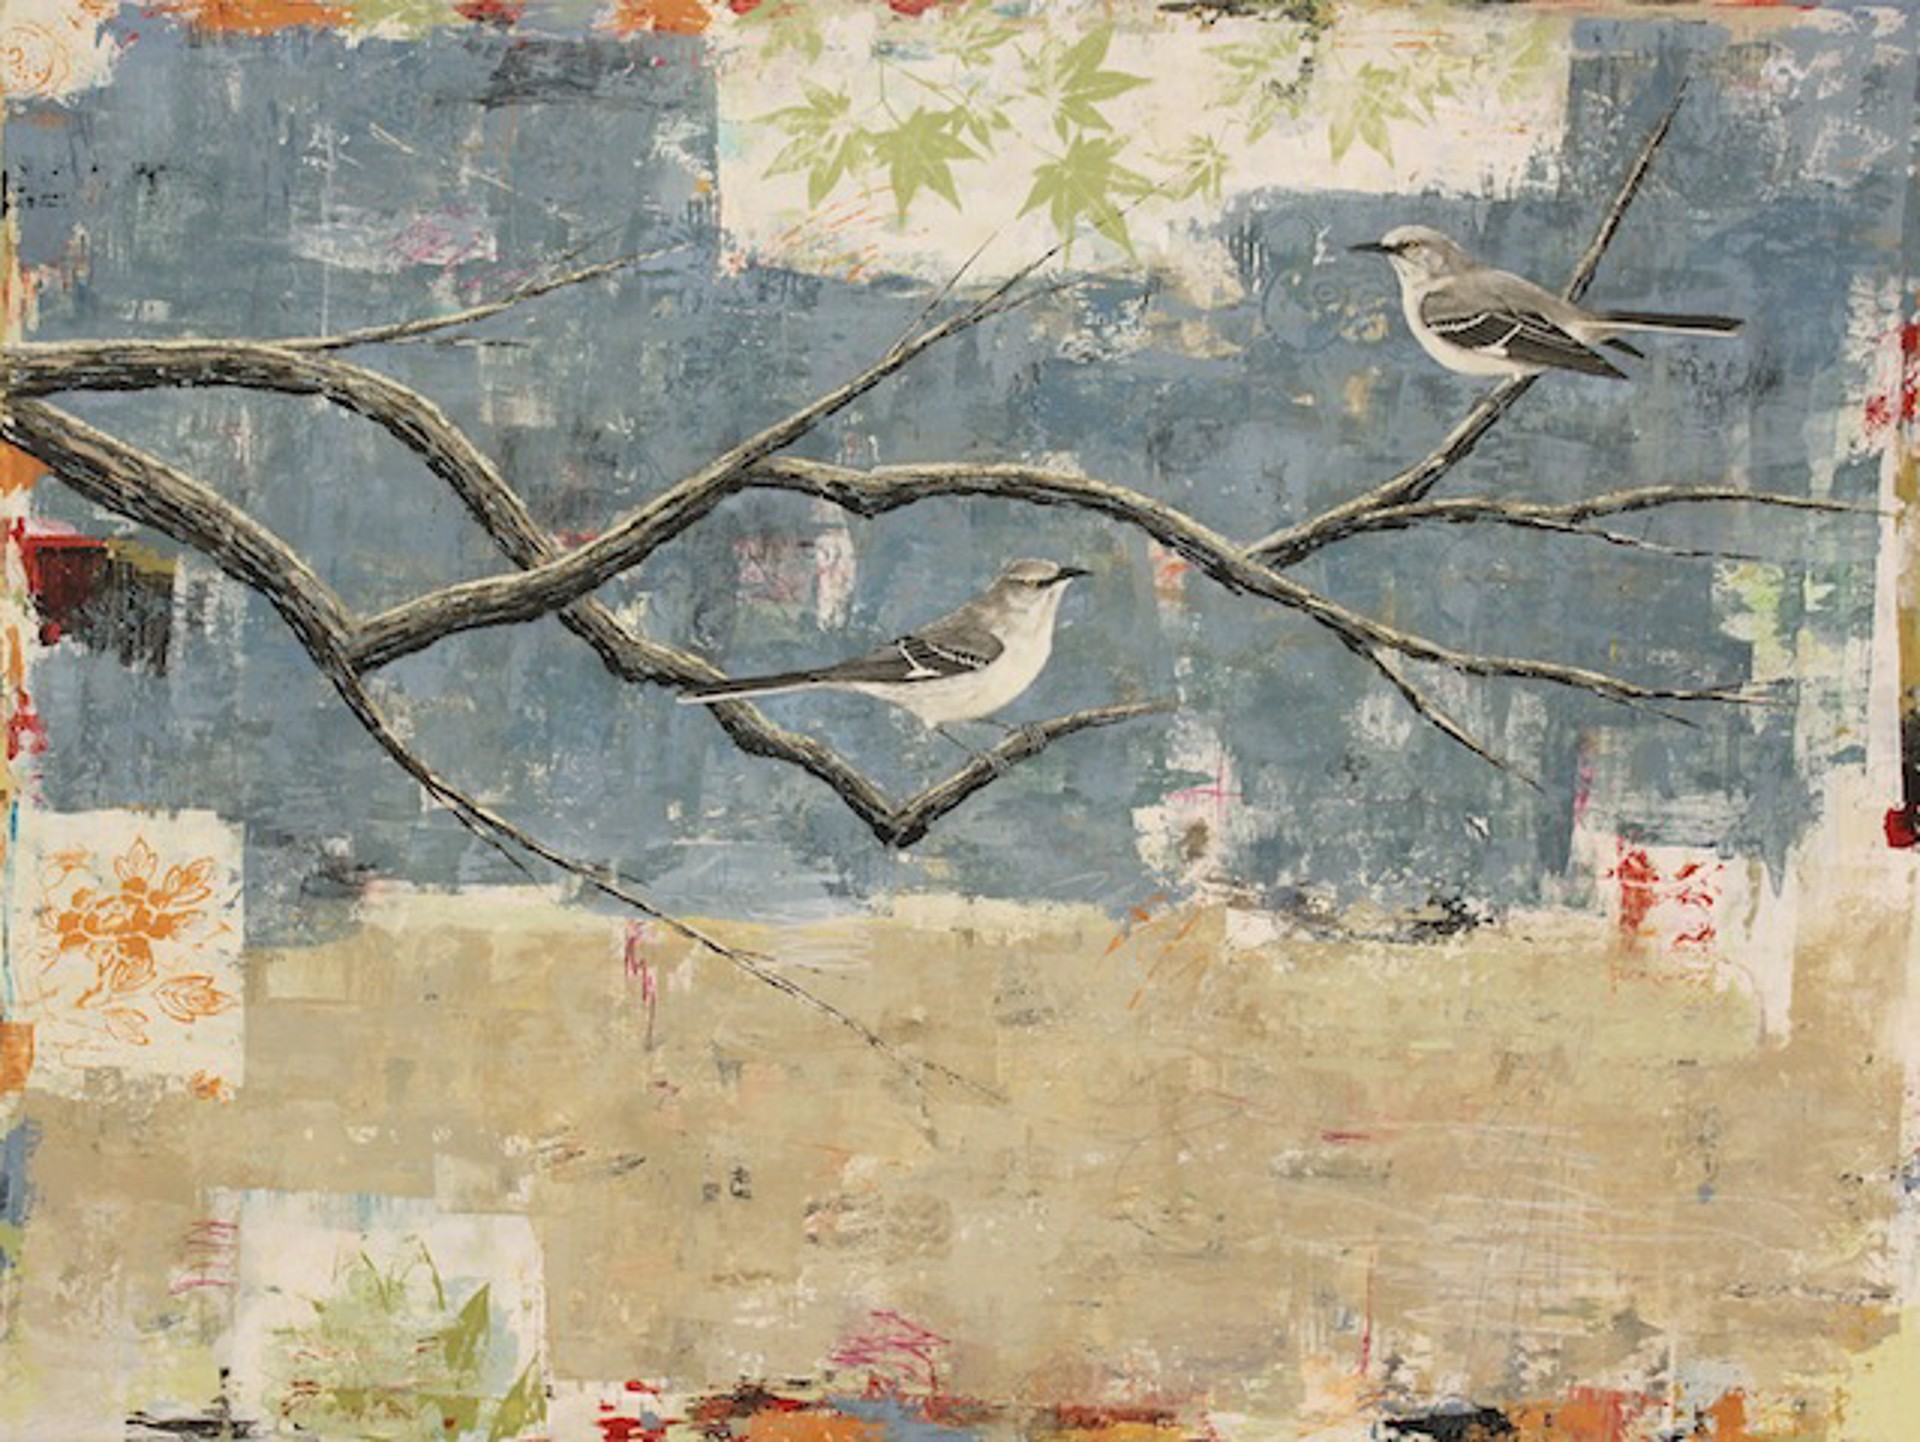 Northern Mockingbirds by Paul Brigham